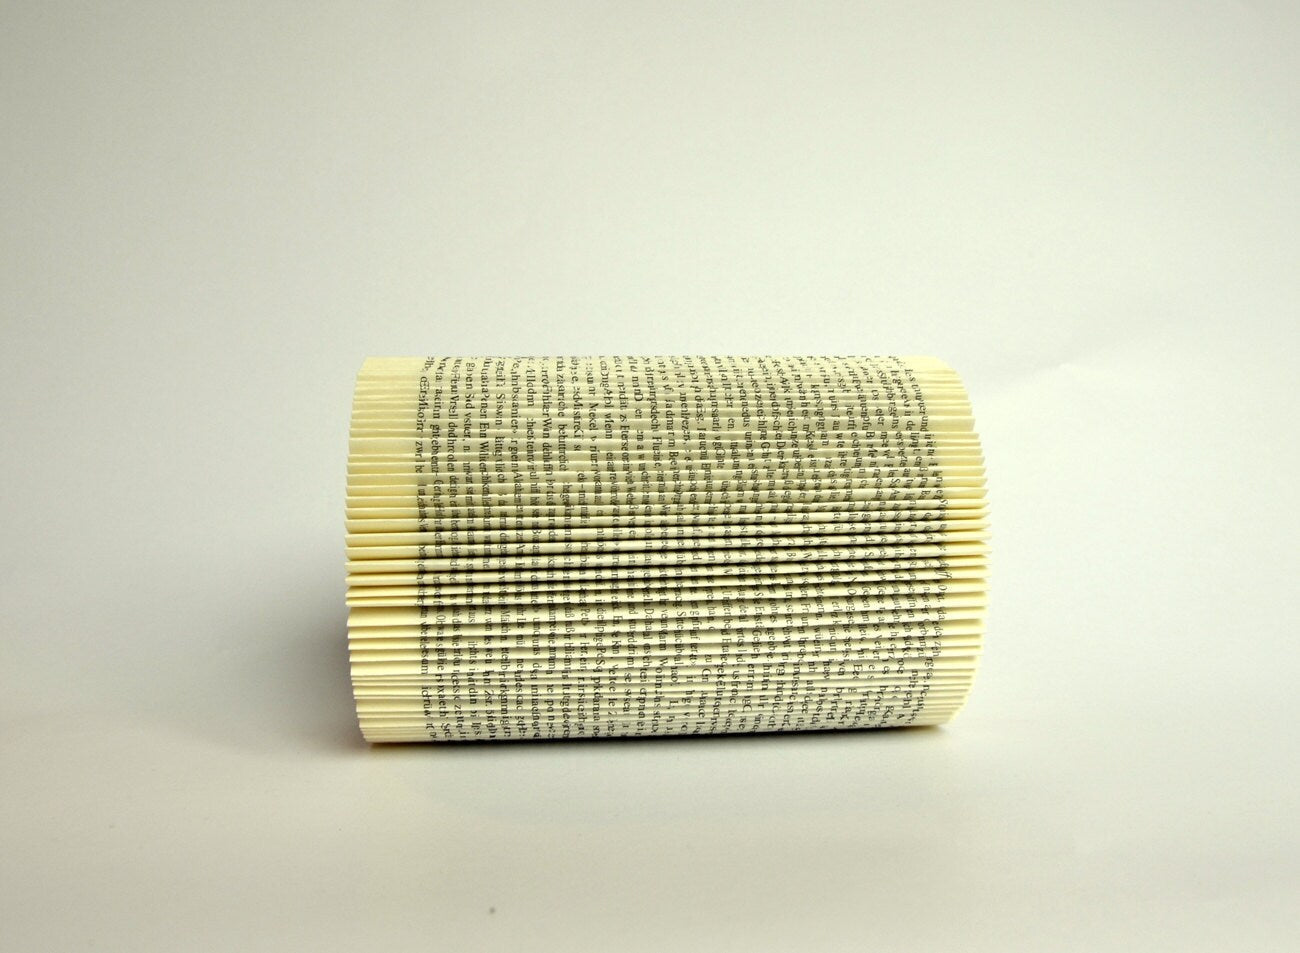 Altered folded Book - Cylinder